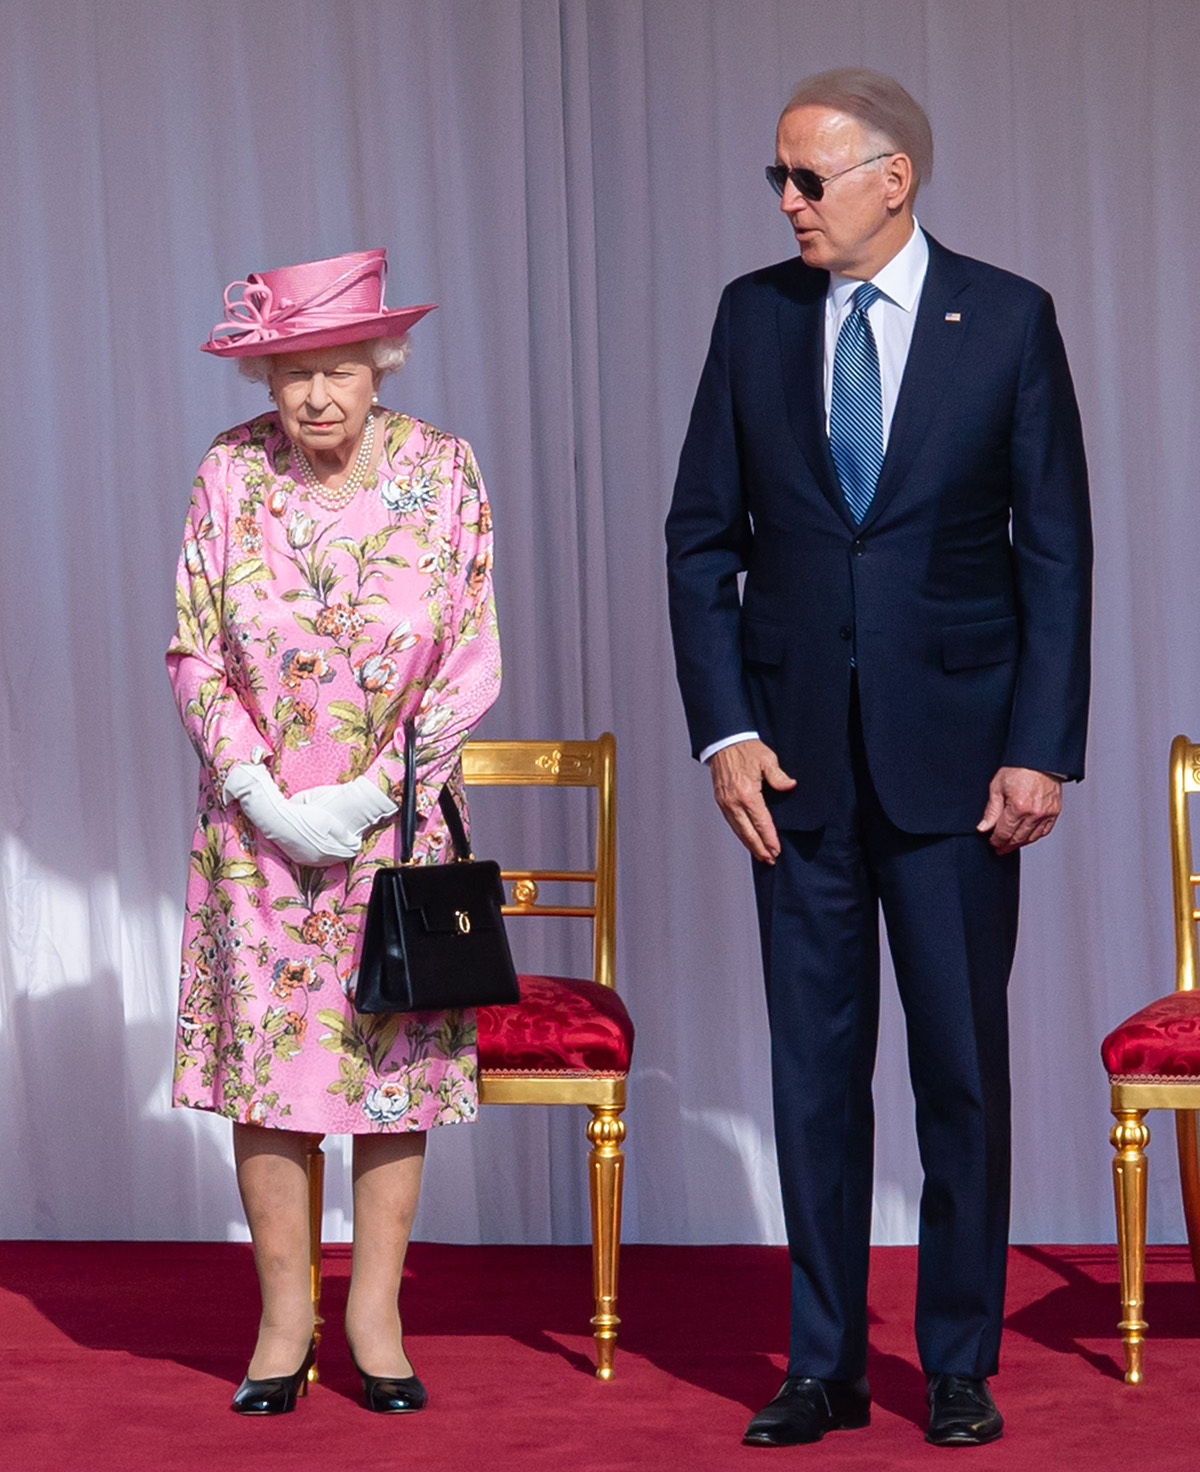 Джо Байден забыл об этикете на встрече с королевой Елизаветой II